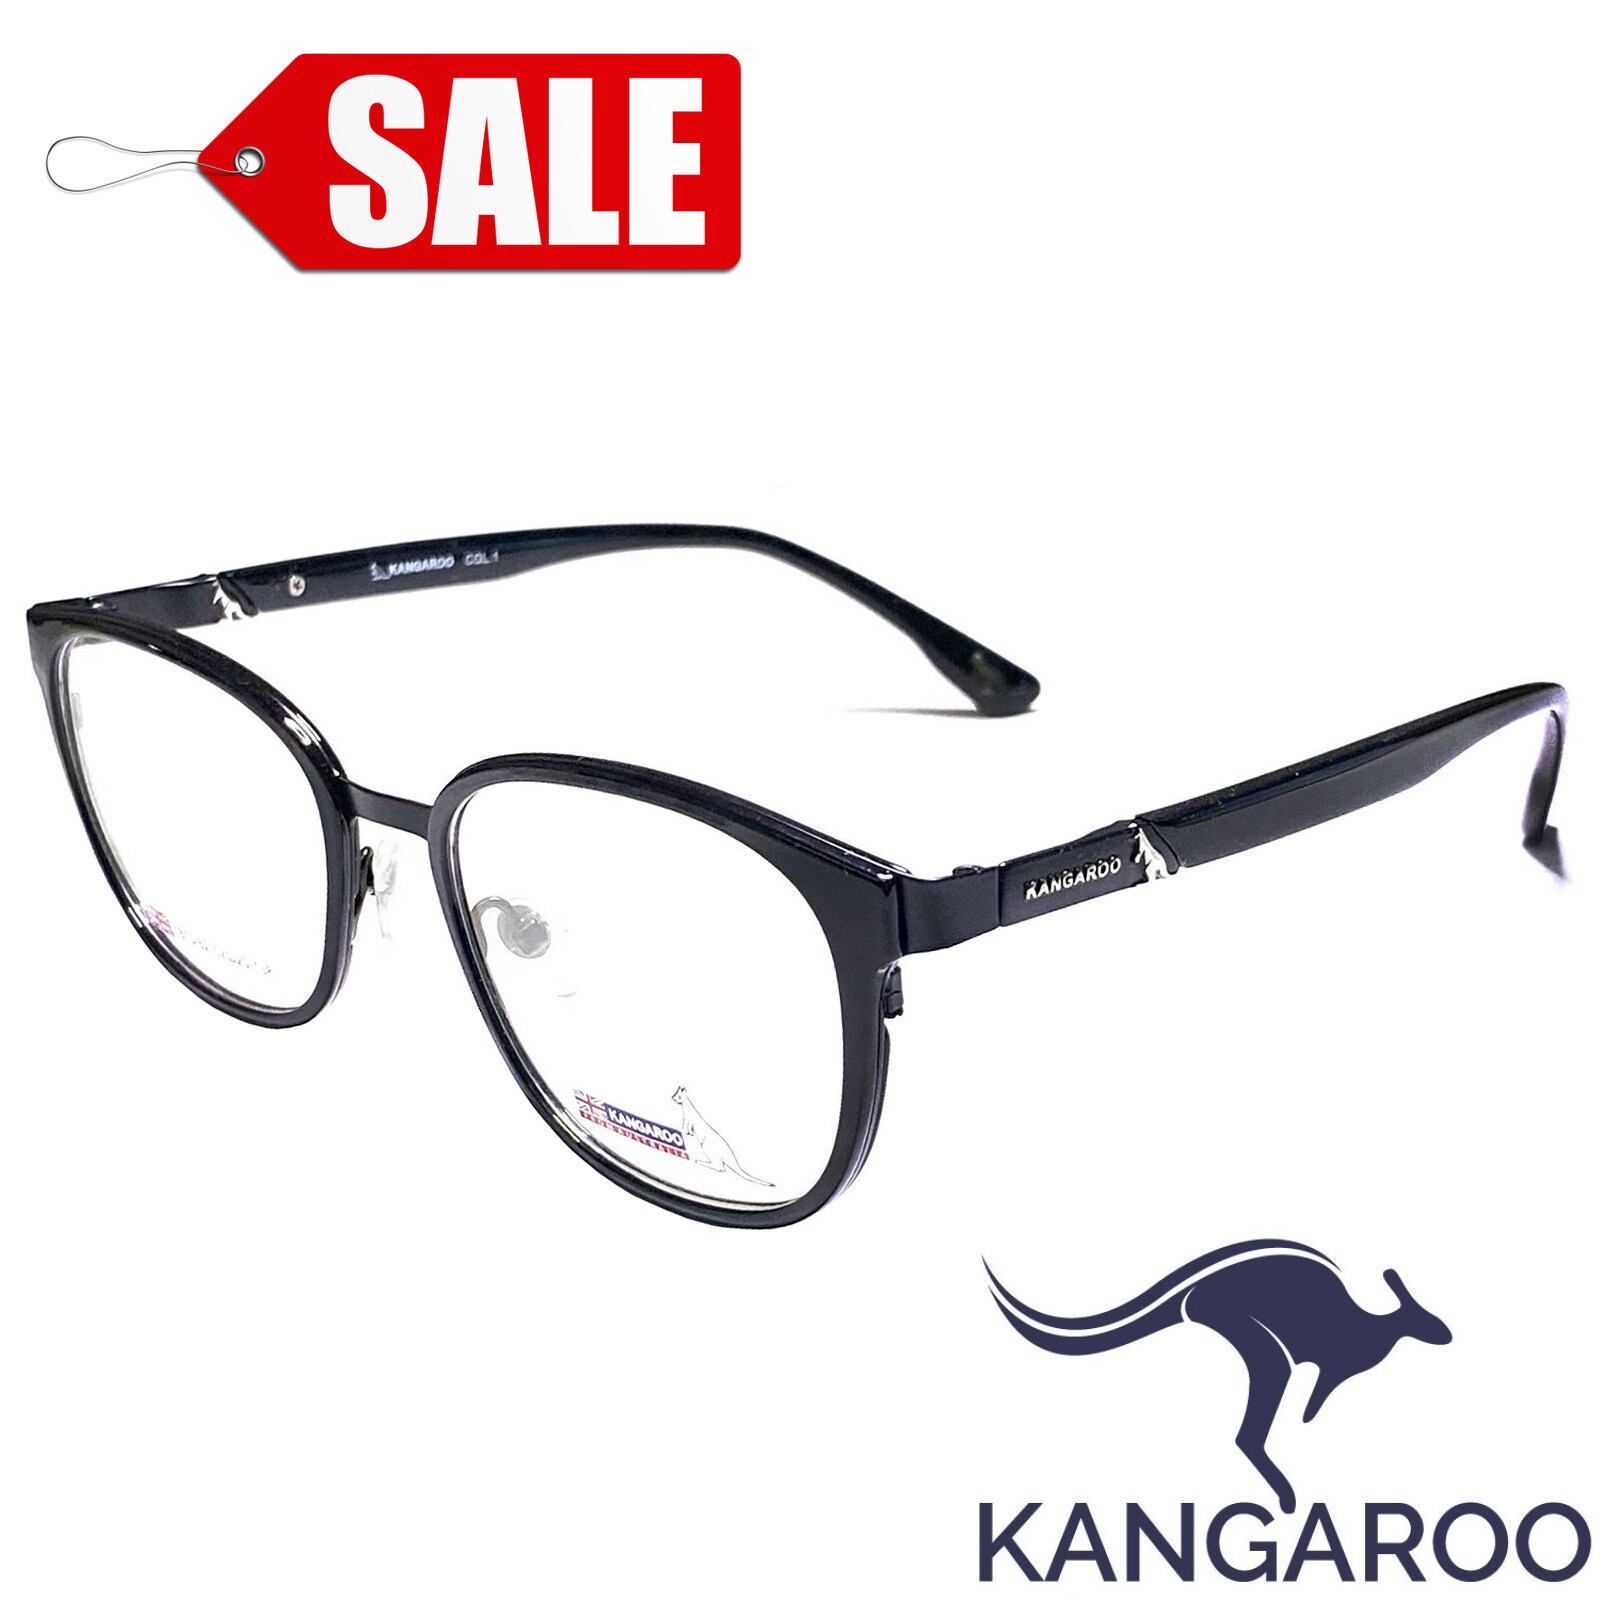 กรอบแว่นตา สำหรับตัดเลนส์ แว่นสายตา แว่นตา Fashion รุ่น Kangaroo 181528 วัสดุ Stainless Steel กรอบเต็ม ทรงรี ขาข้อต่อ รับตัดเลนส์ทุกชนิด ราคาถูก